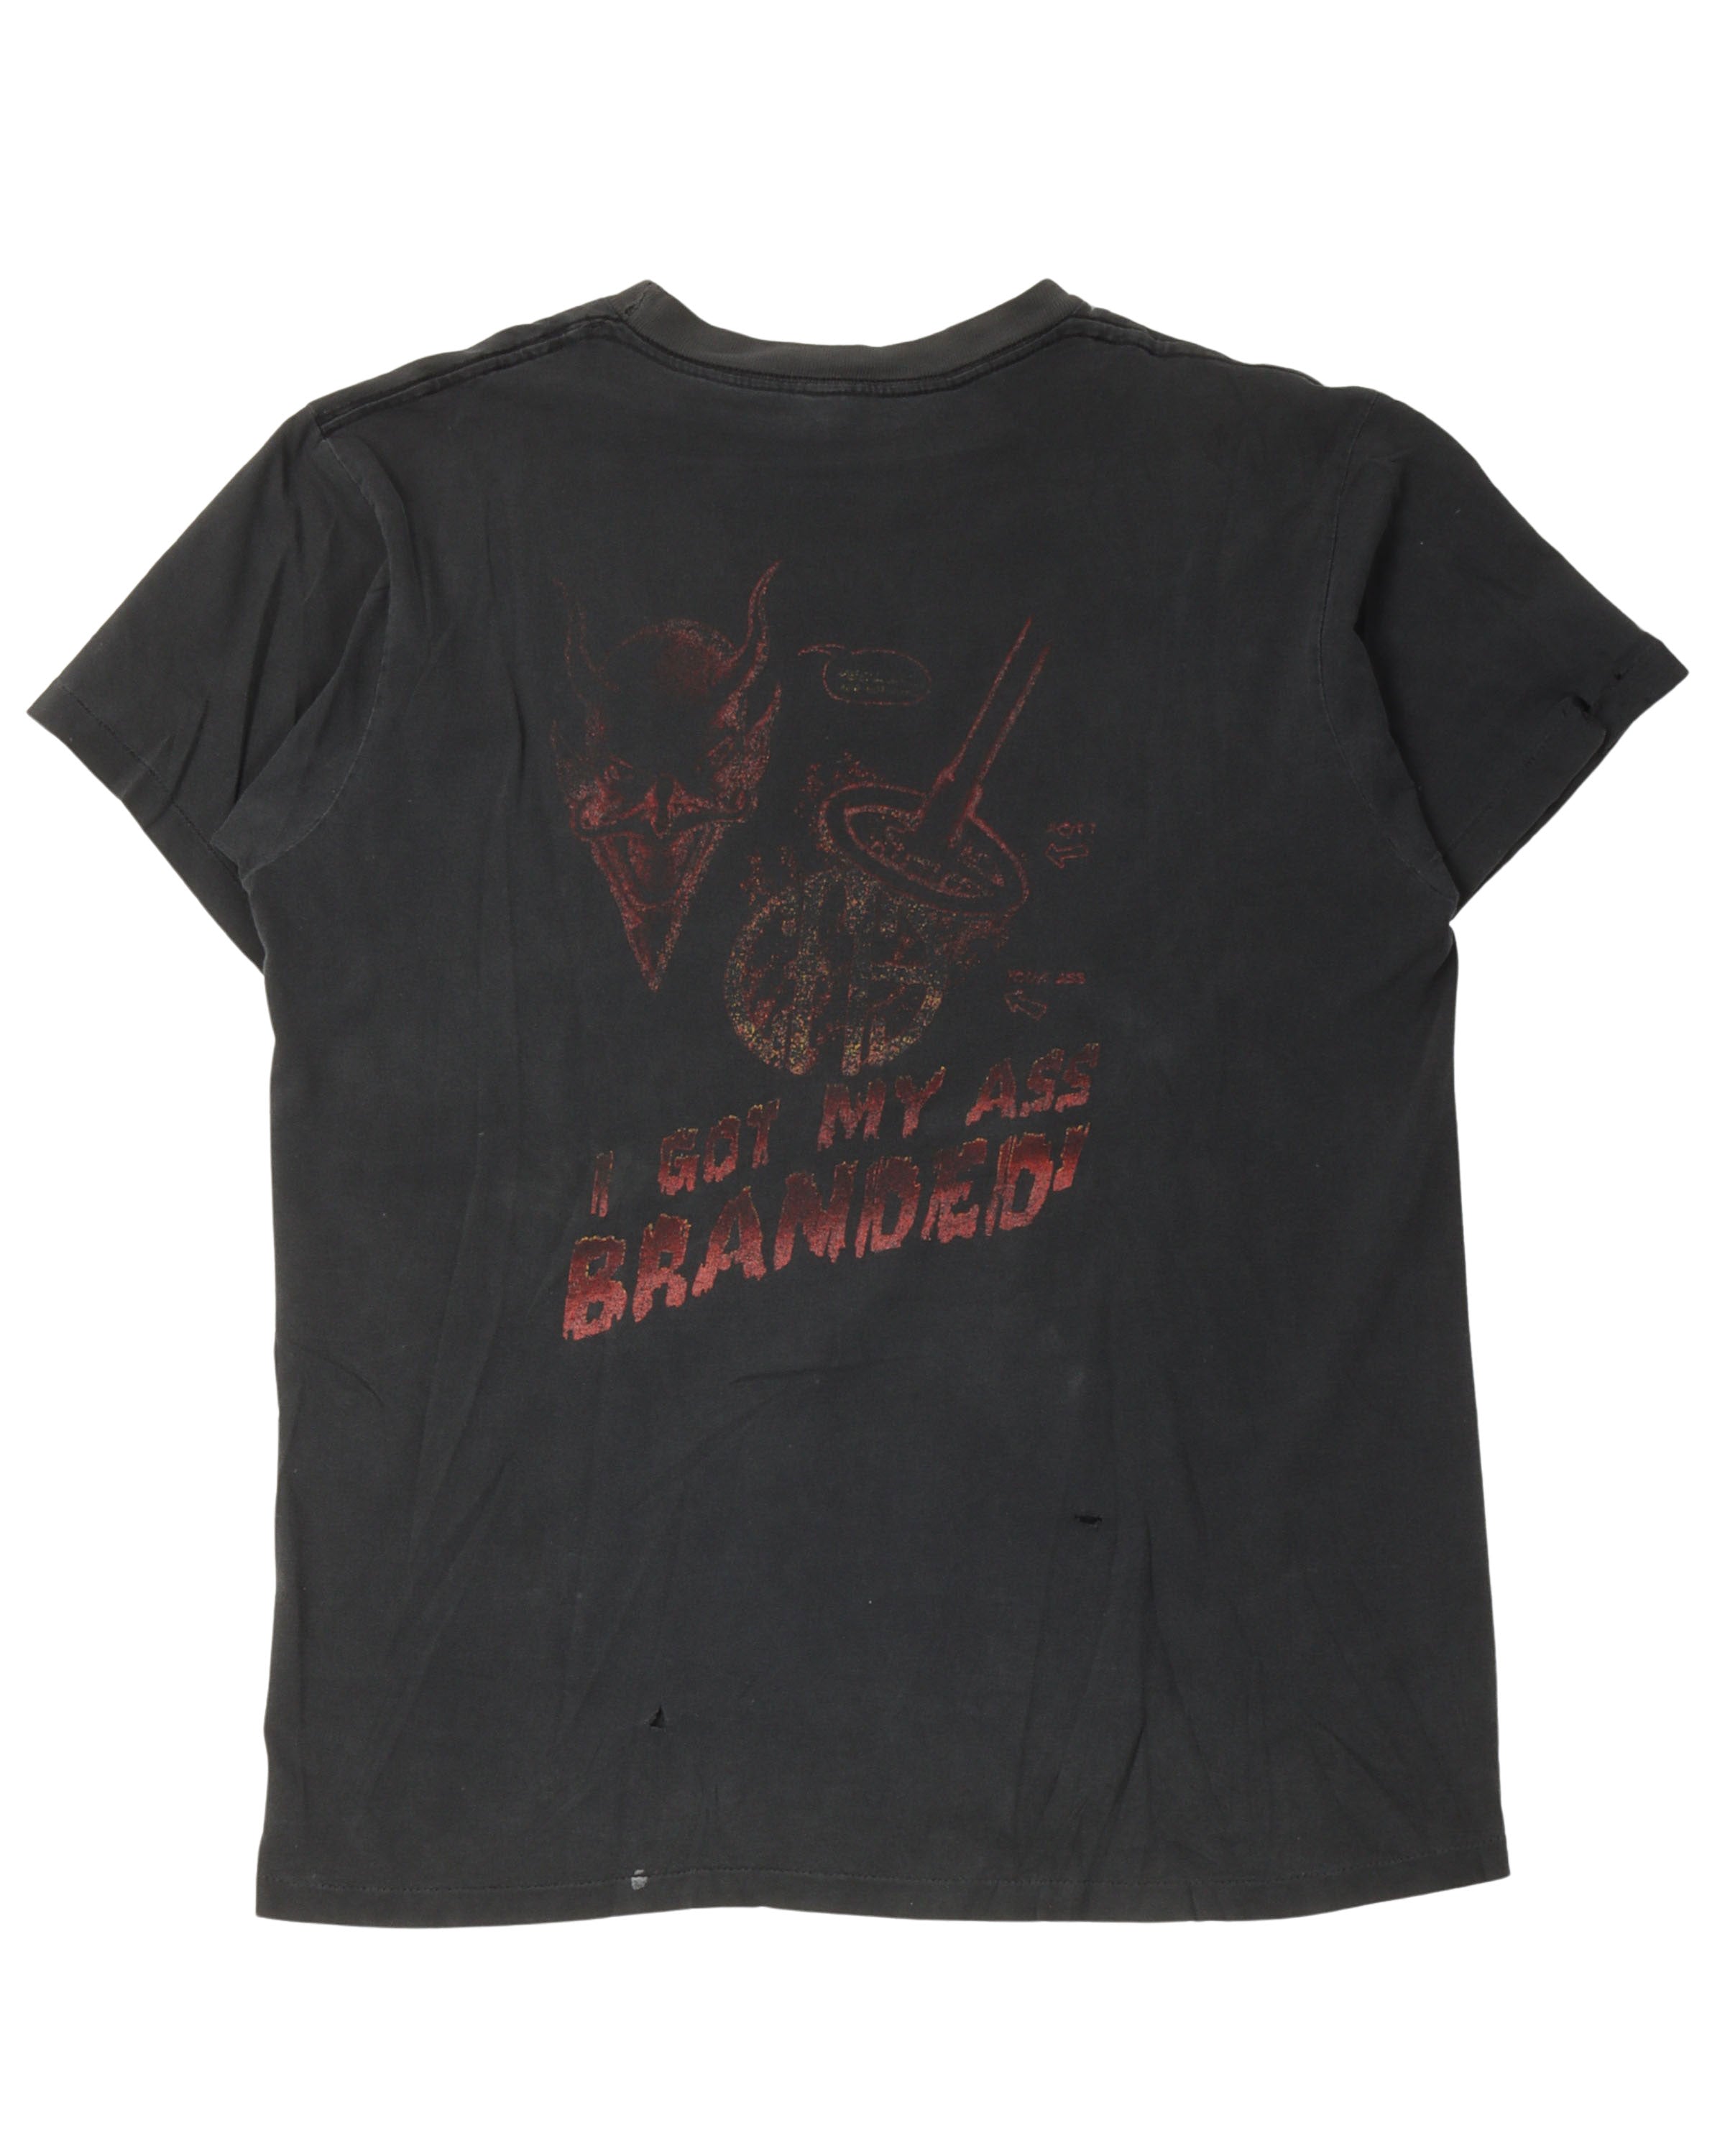 Pantera "I Got My Ass Branded" T-Shirt